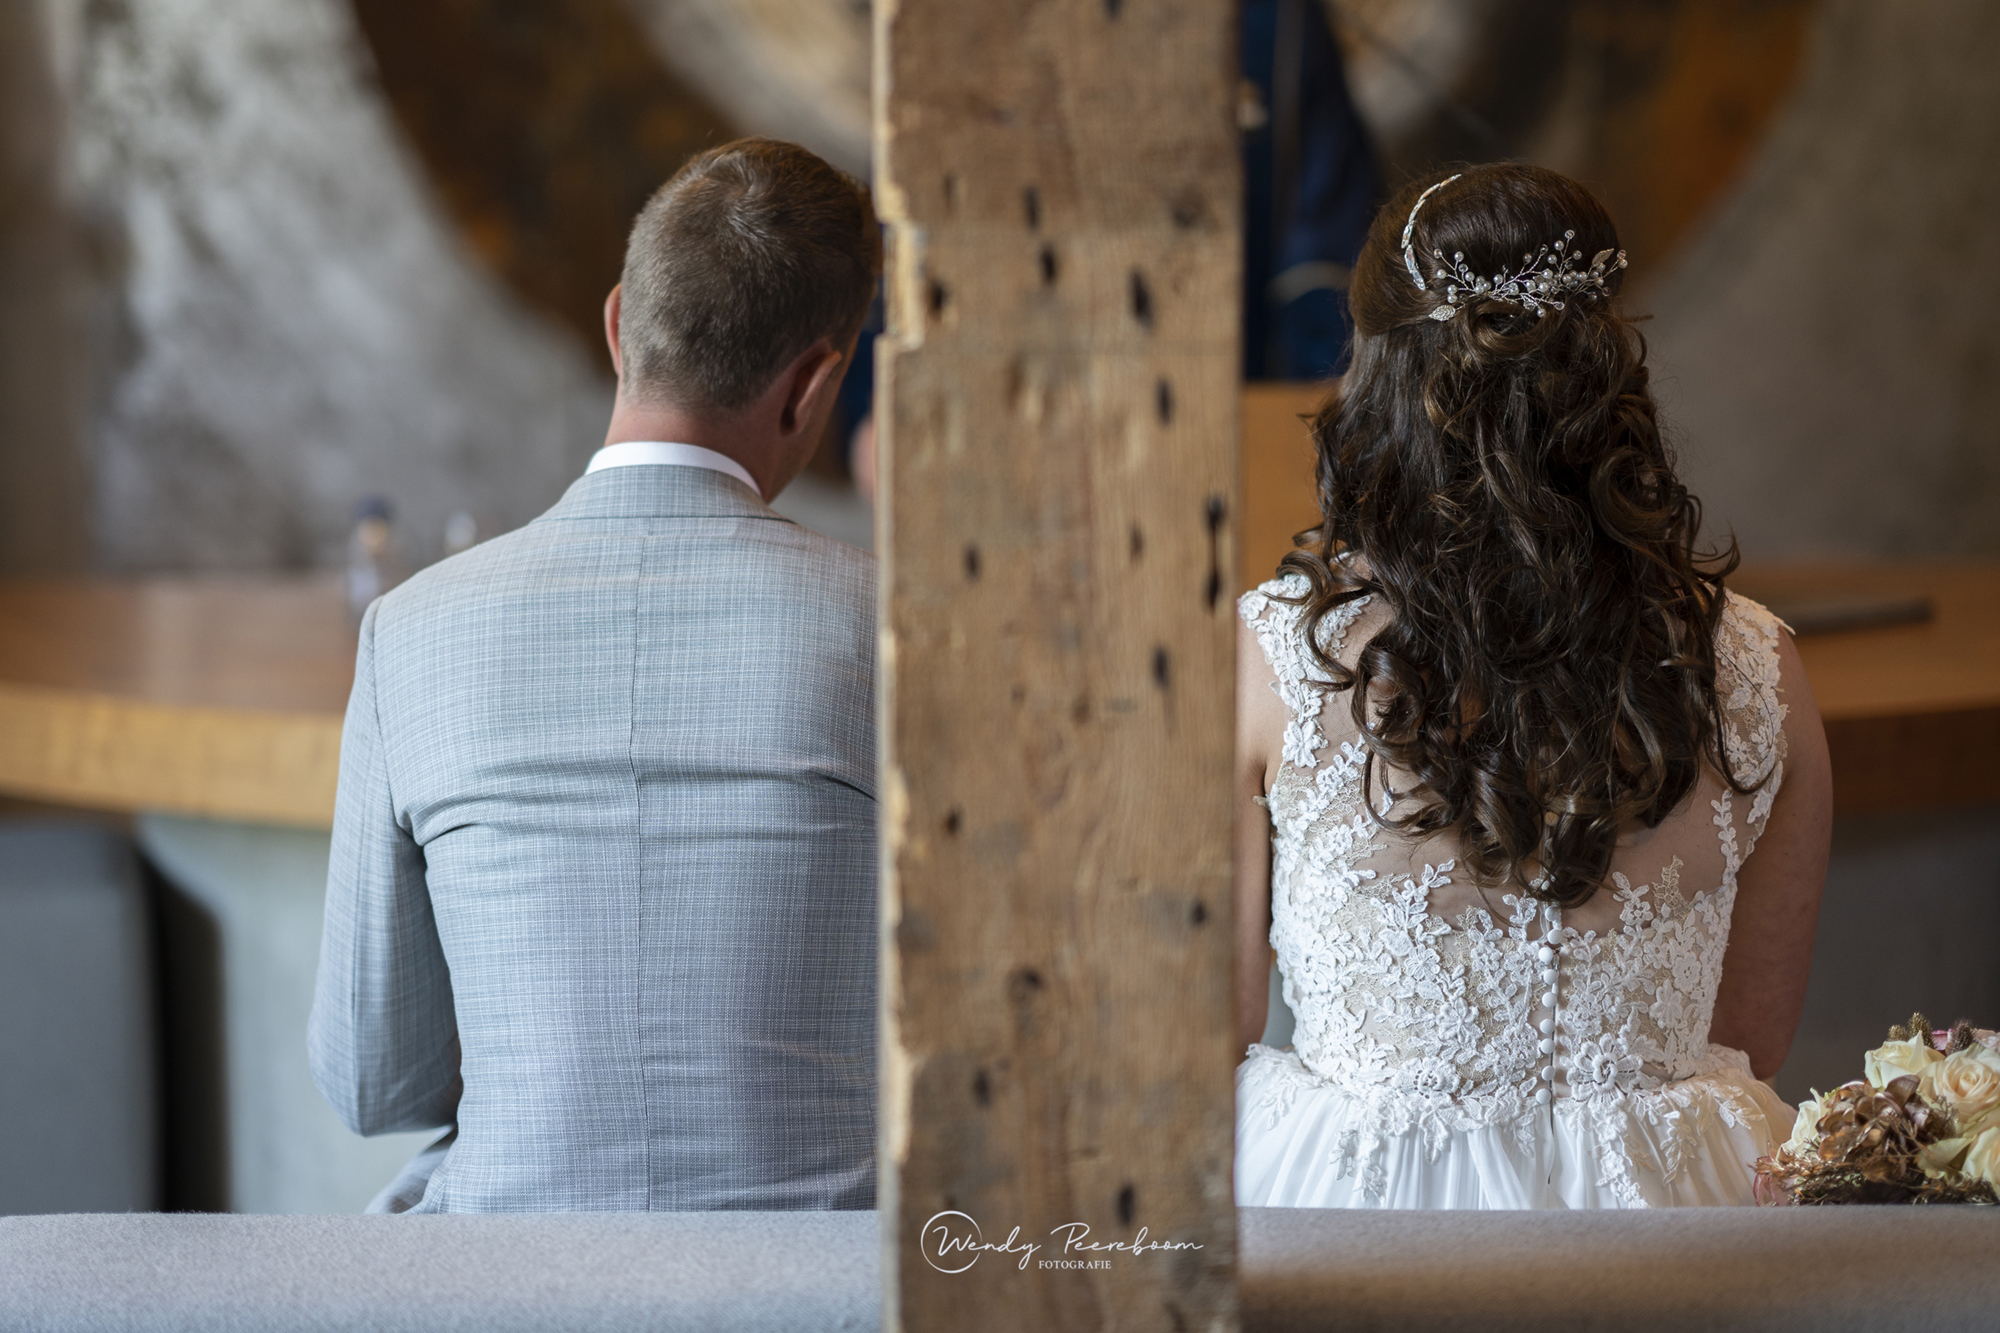 Trouwen, sprookjesachtige bruiloft foto's Bruiloft fotograaf Zeeland